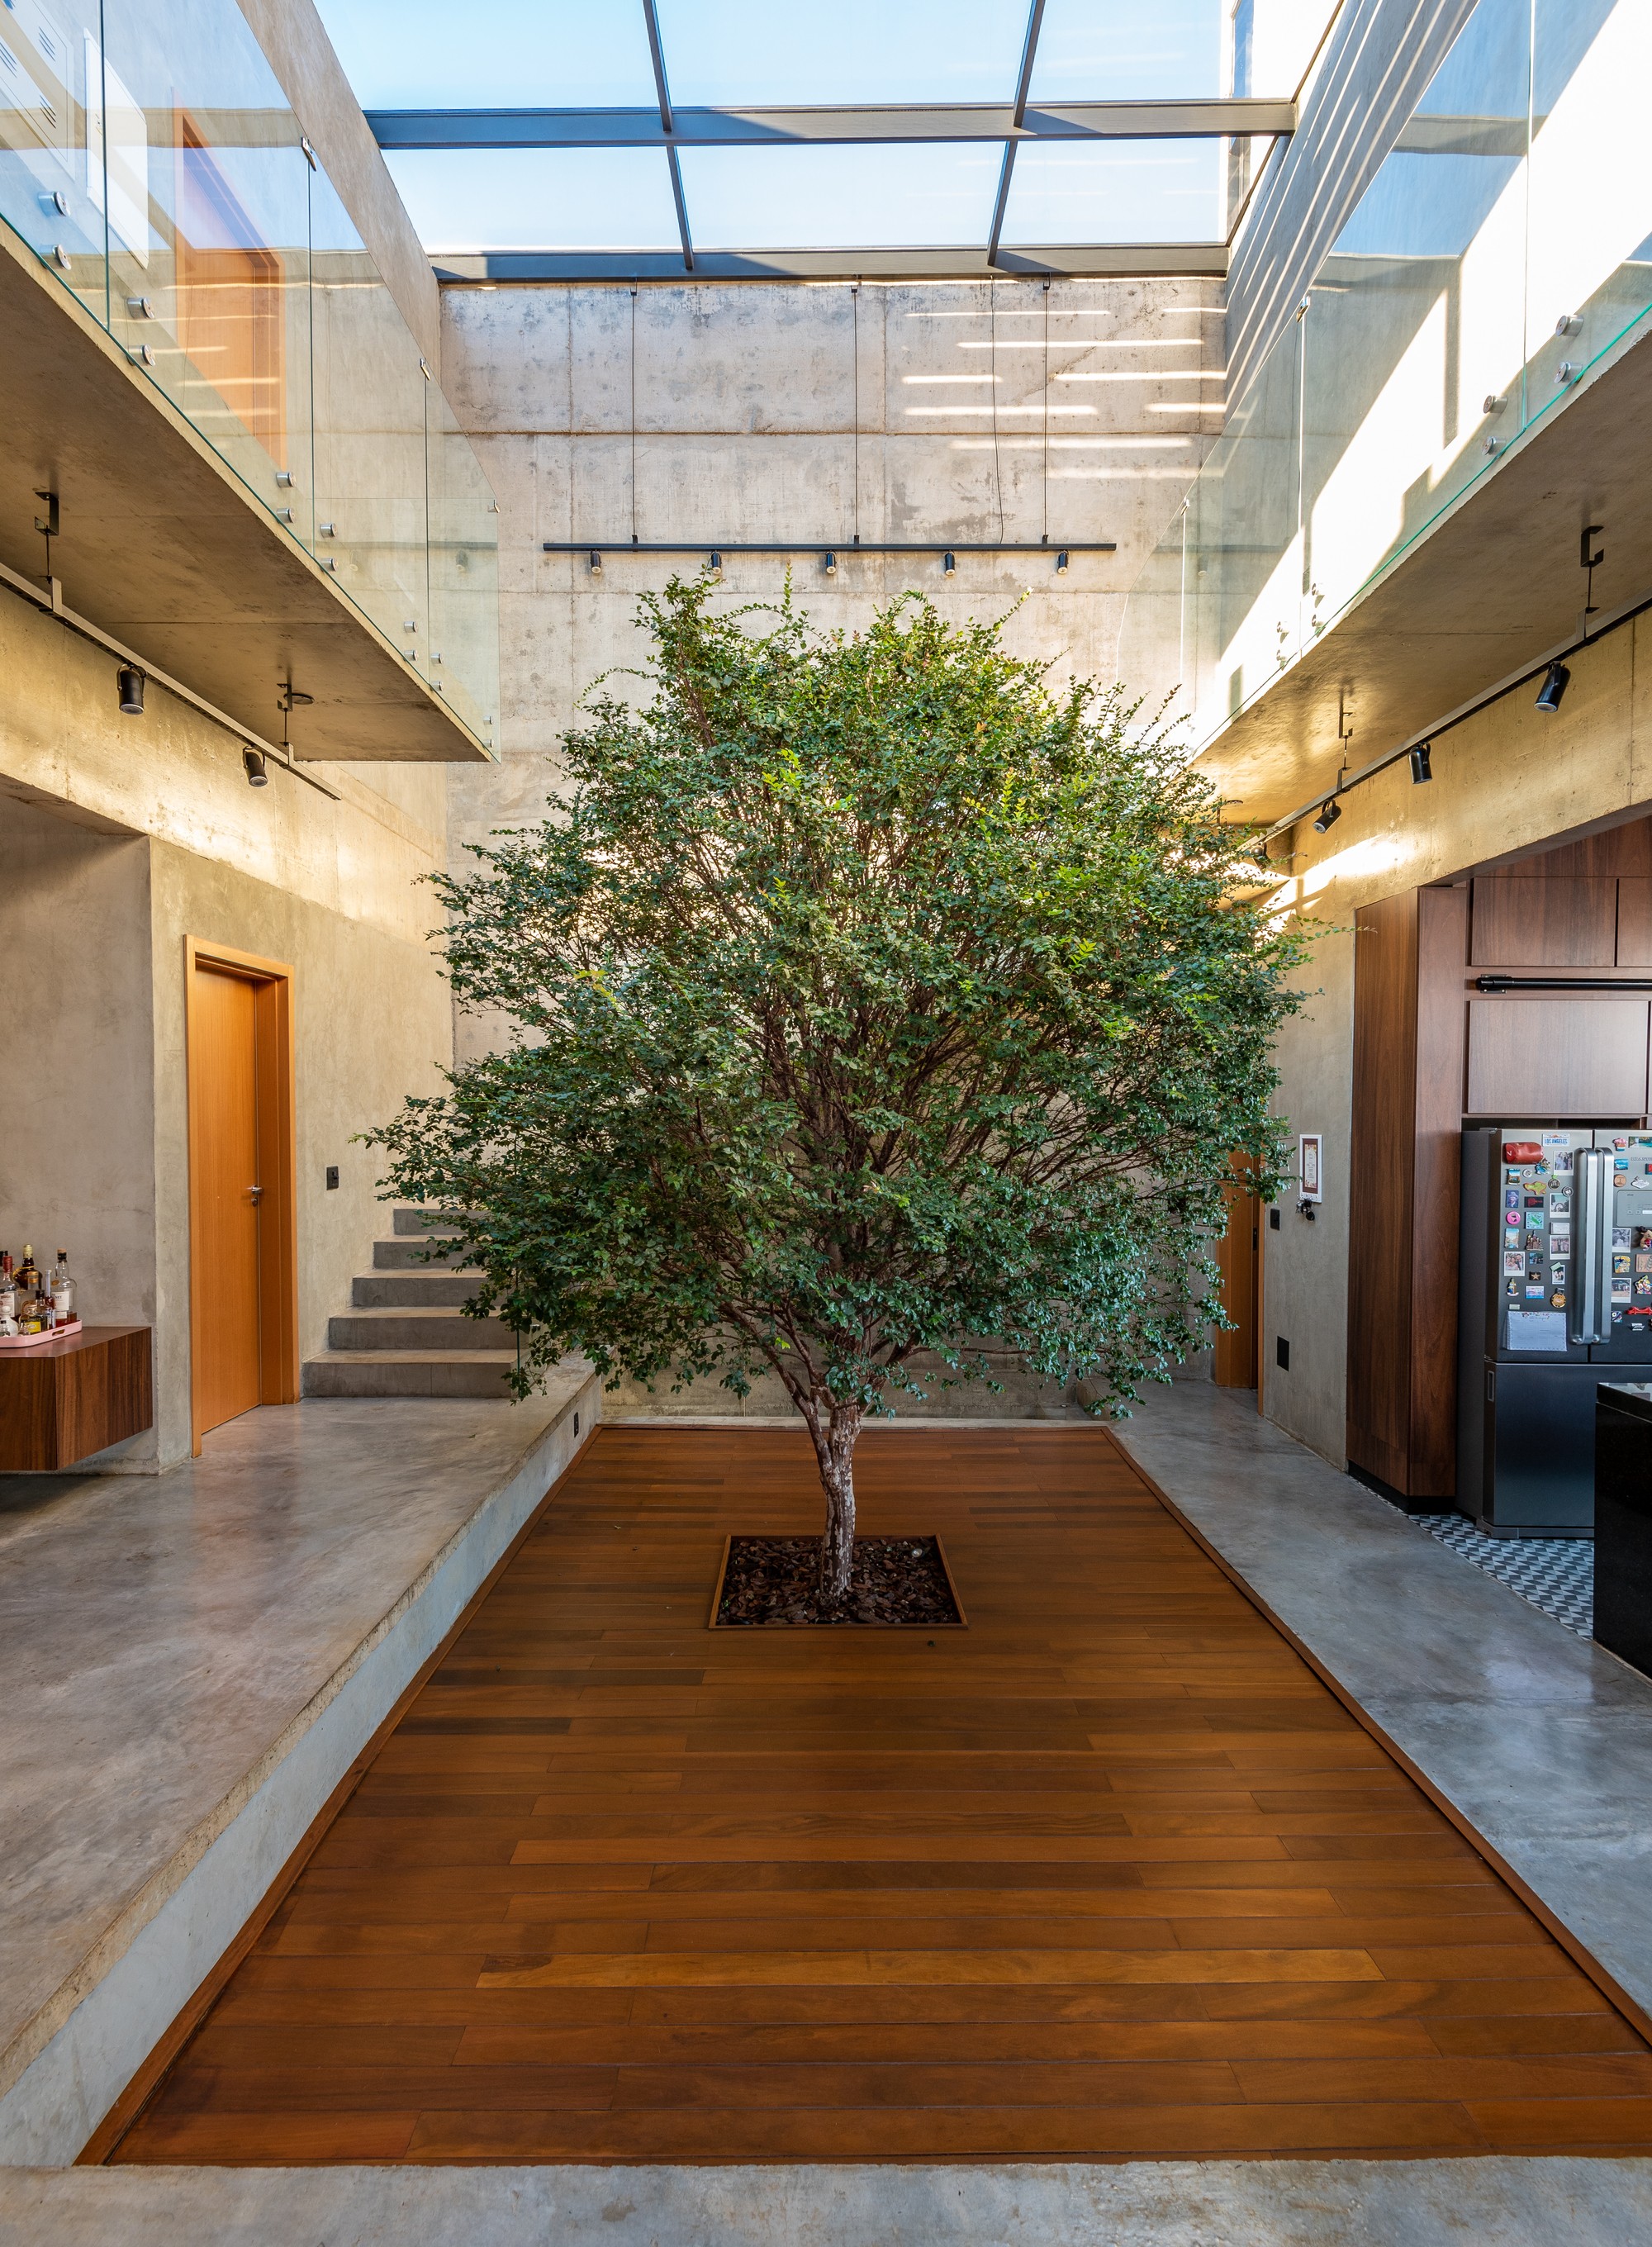 Natureza em casa: 6 projetos com árvores nos interiores (Foto: Fabio Jr Severo)